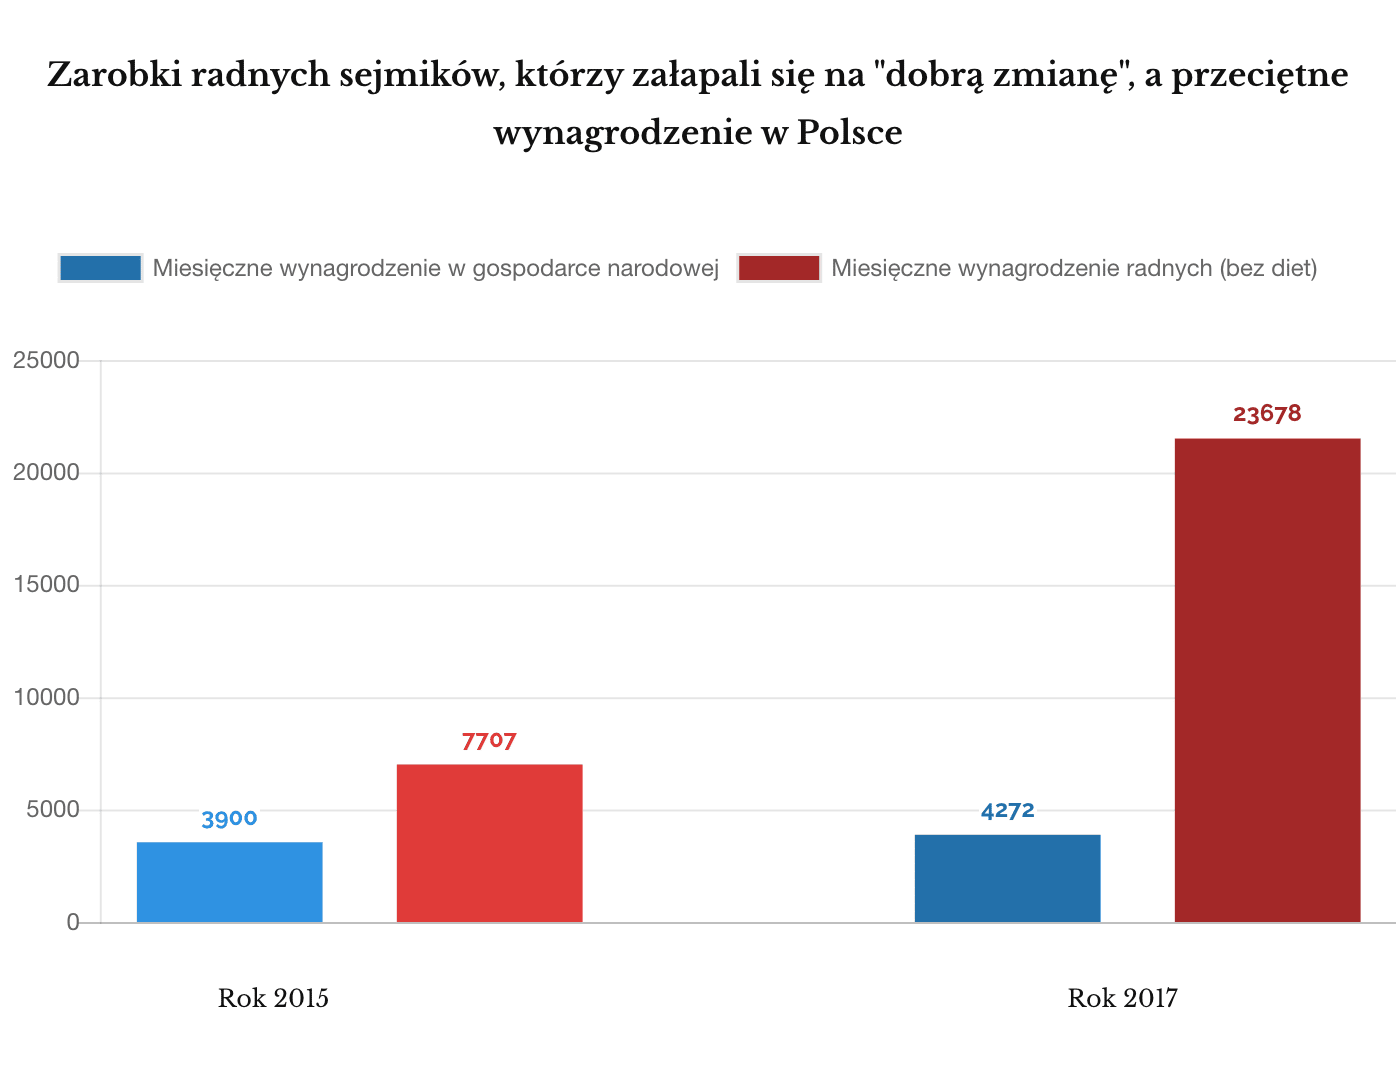 Wynagrodzenie radnych PiS w sejmikach, a przeciętne wynagrodzenie w Polsce